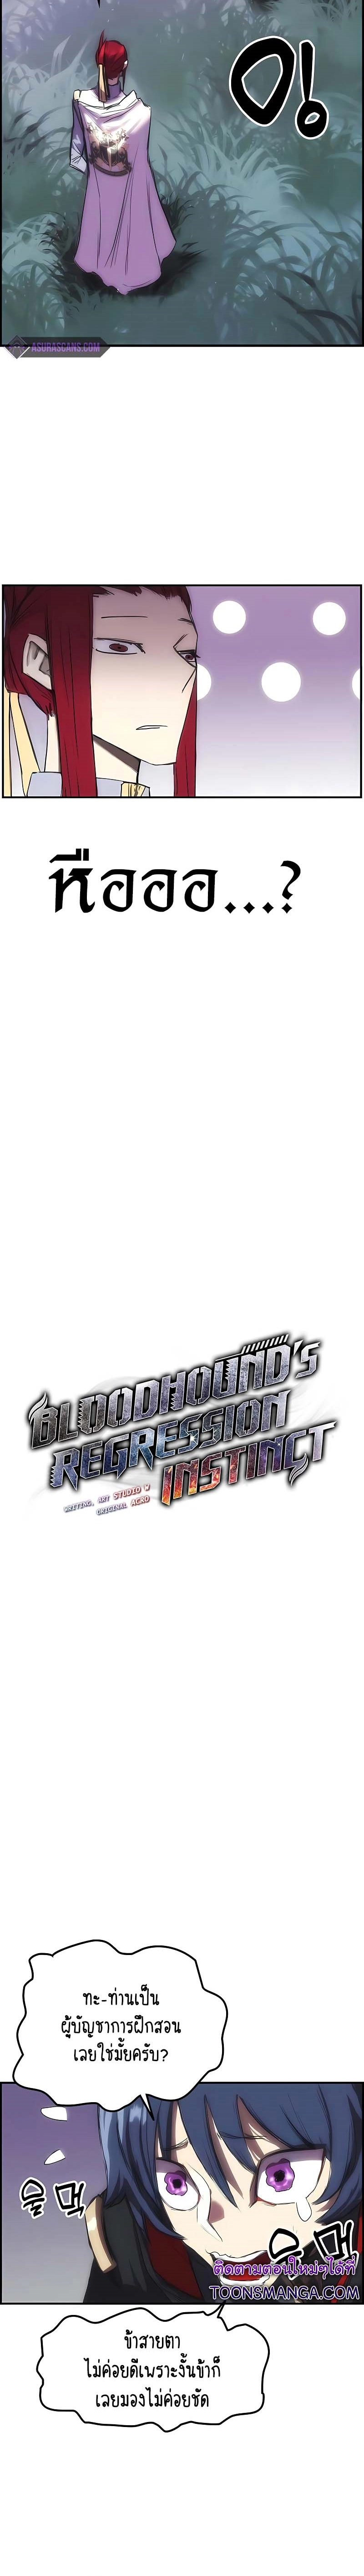 Bloodhound’s Regression Instinct 13 02